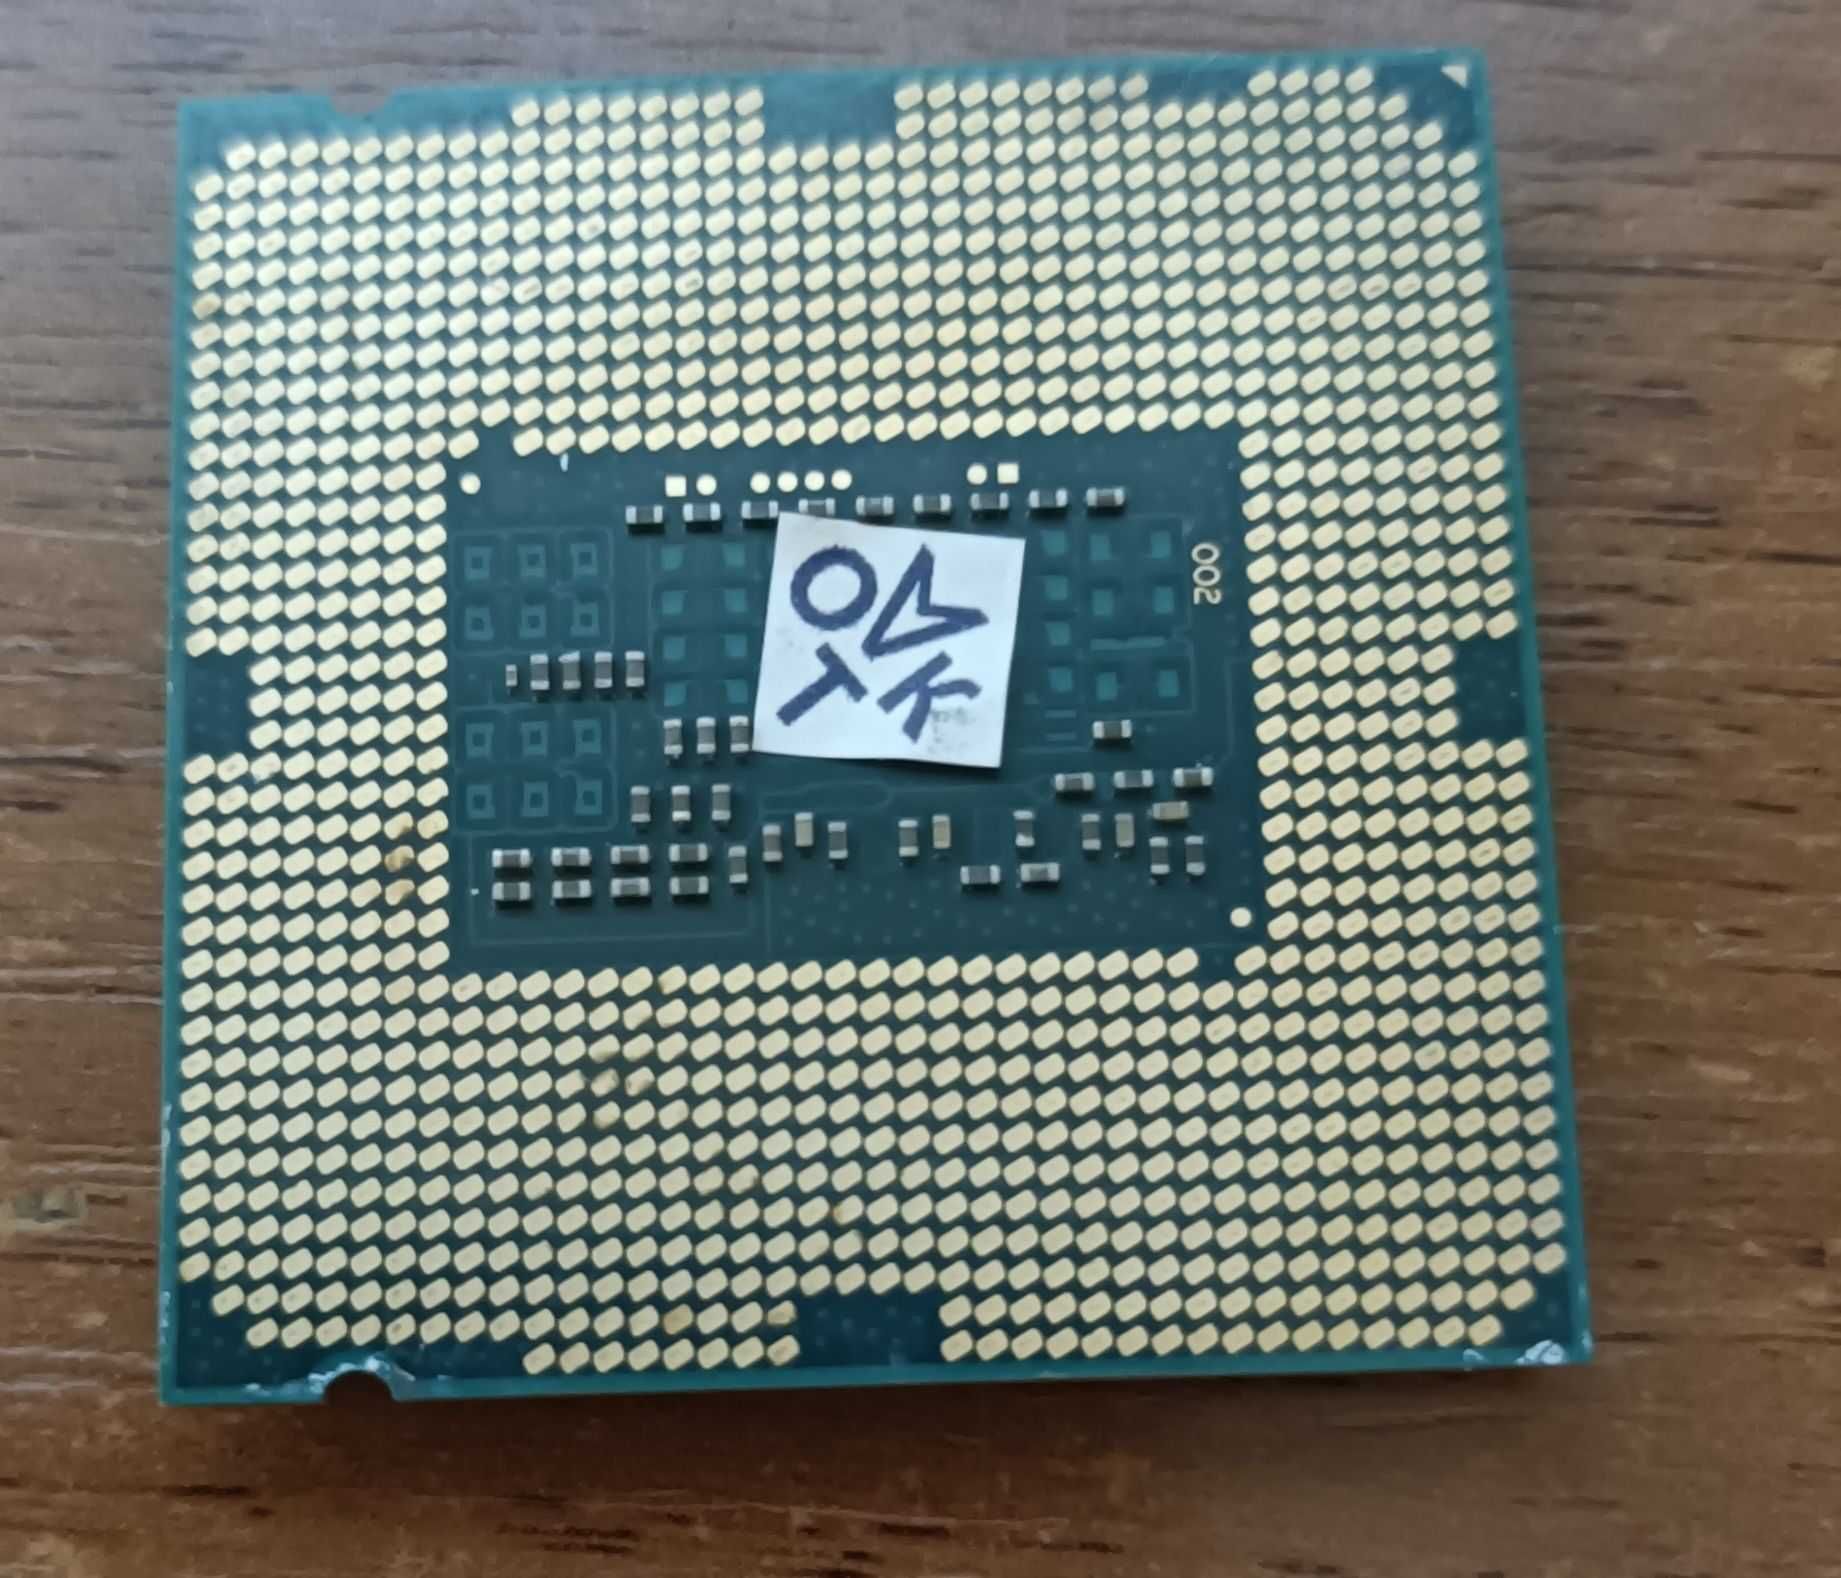 Процессор Intel Core i5-4570T 2.90GHz/4MB s1150   в отличном состоянии